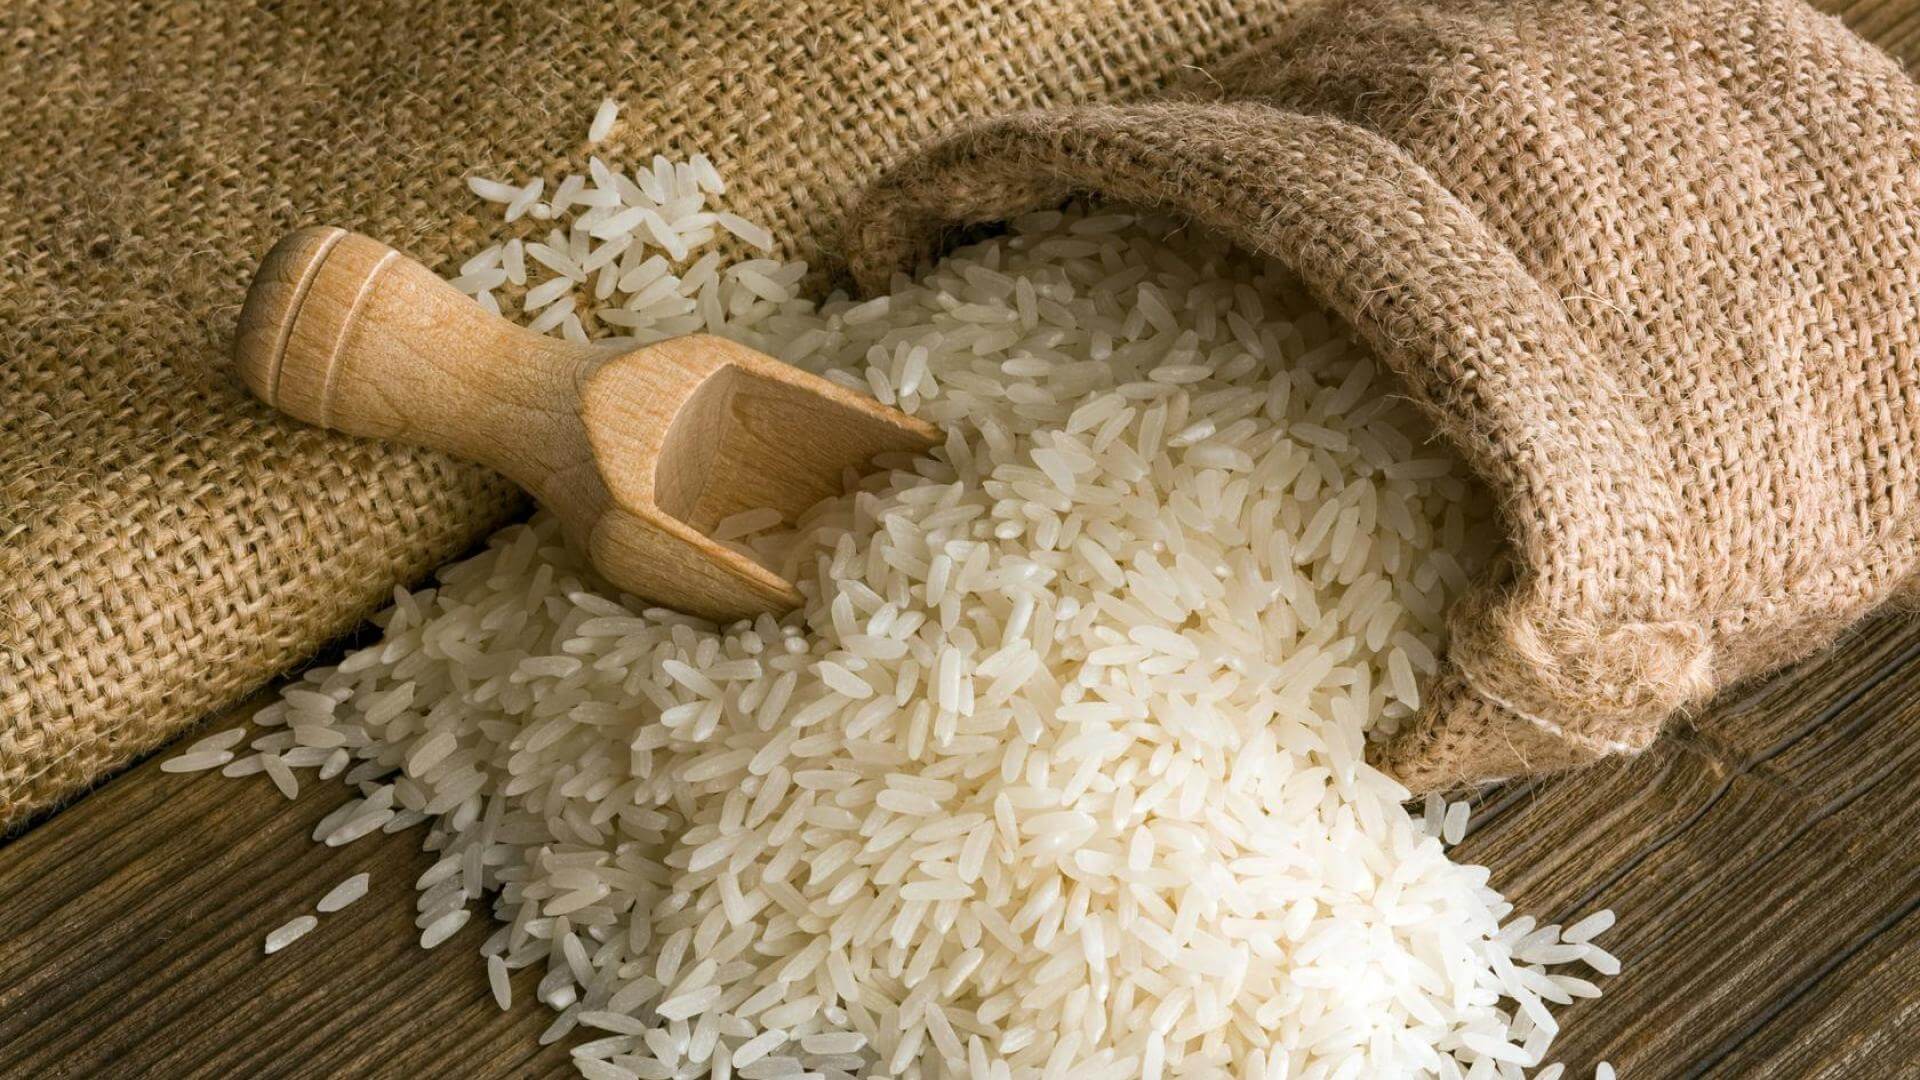 egyptian rice